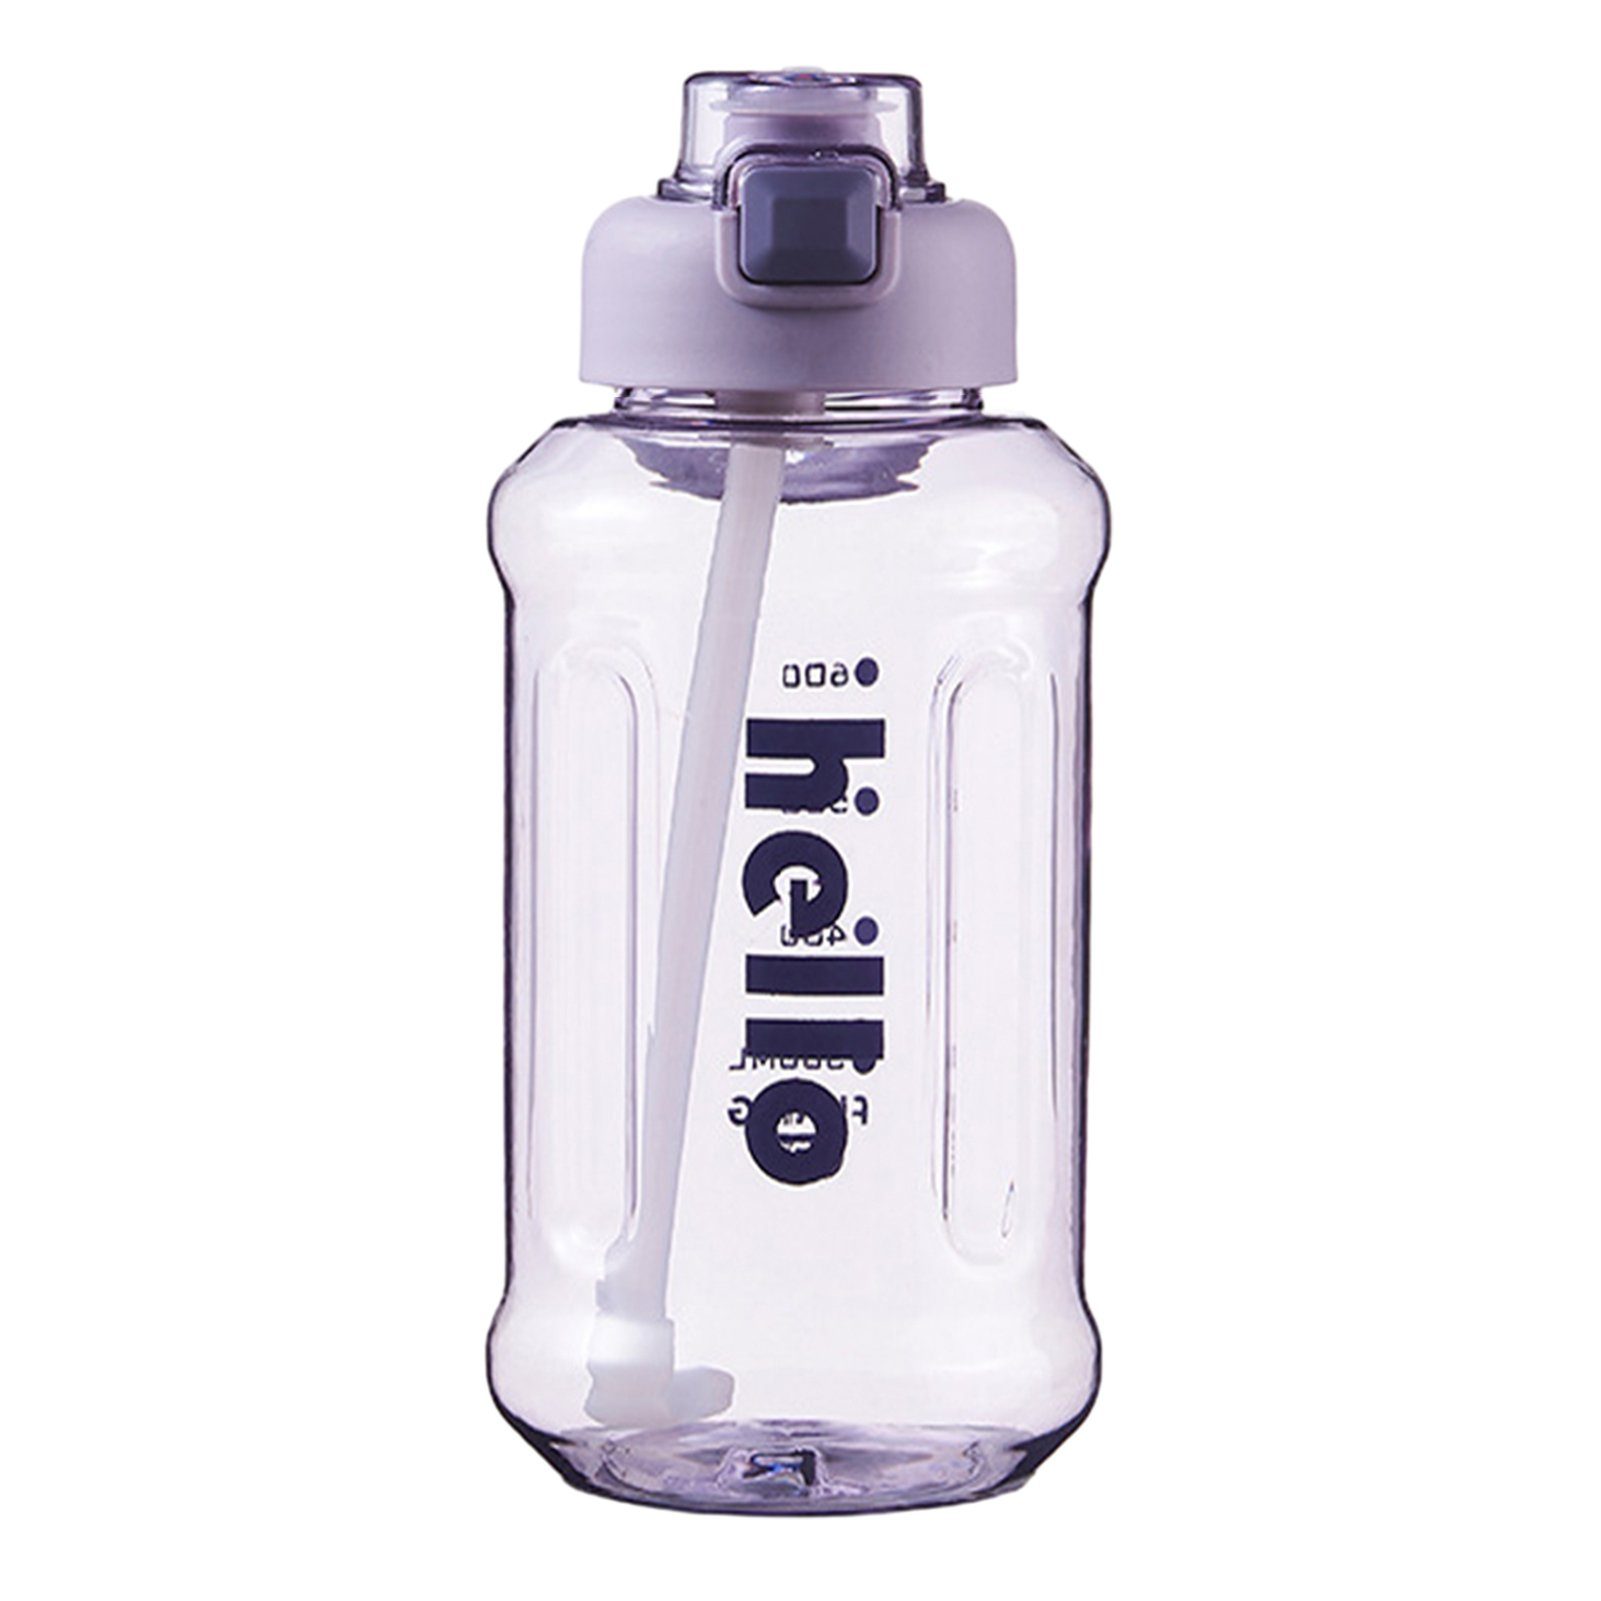 Griff, Kapazität, Blusmart Hoher Tragbarer Stroh-Wasserbecher 1000ml purple Mit Trinkflasche Versiegelter, Trinkflasche